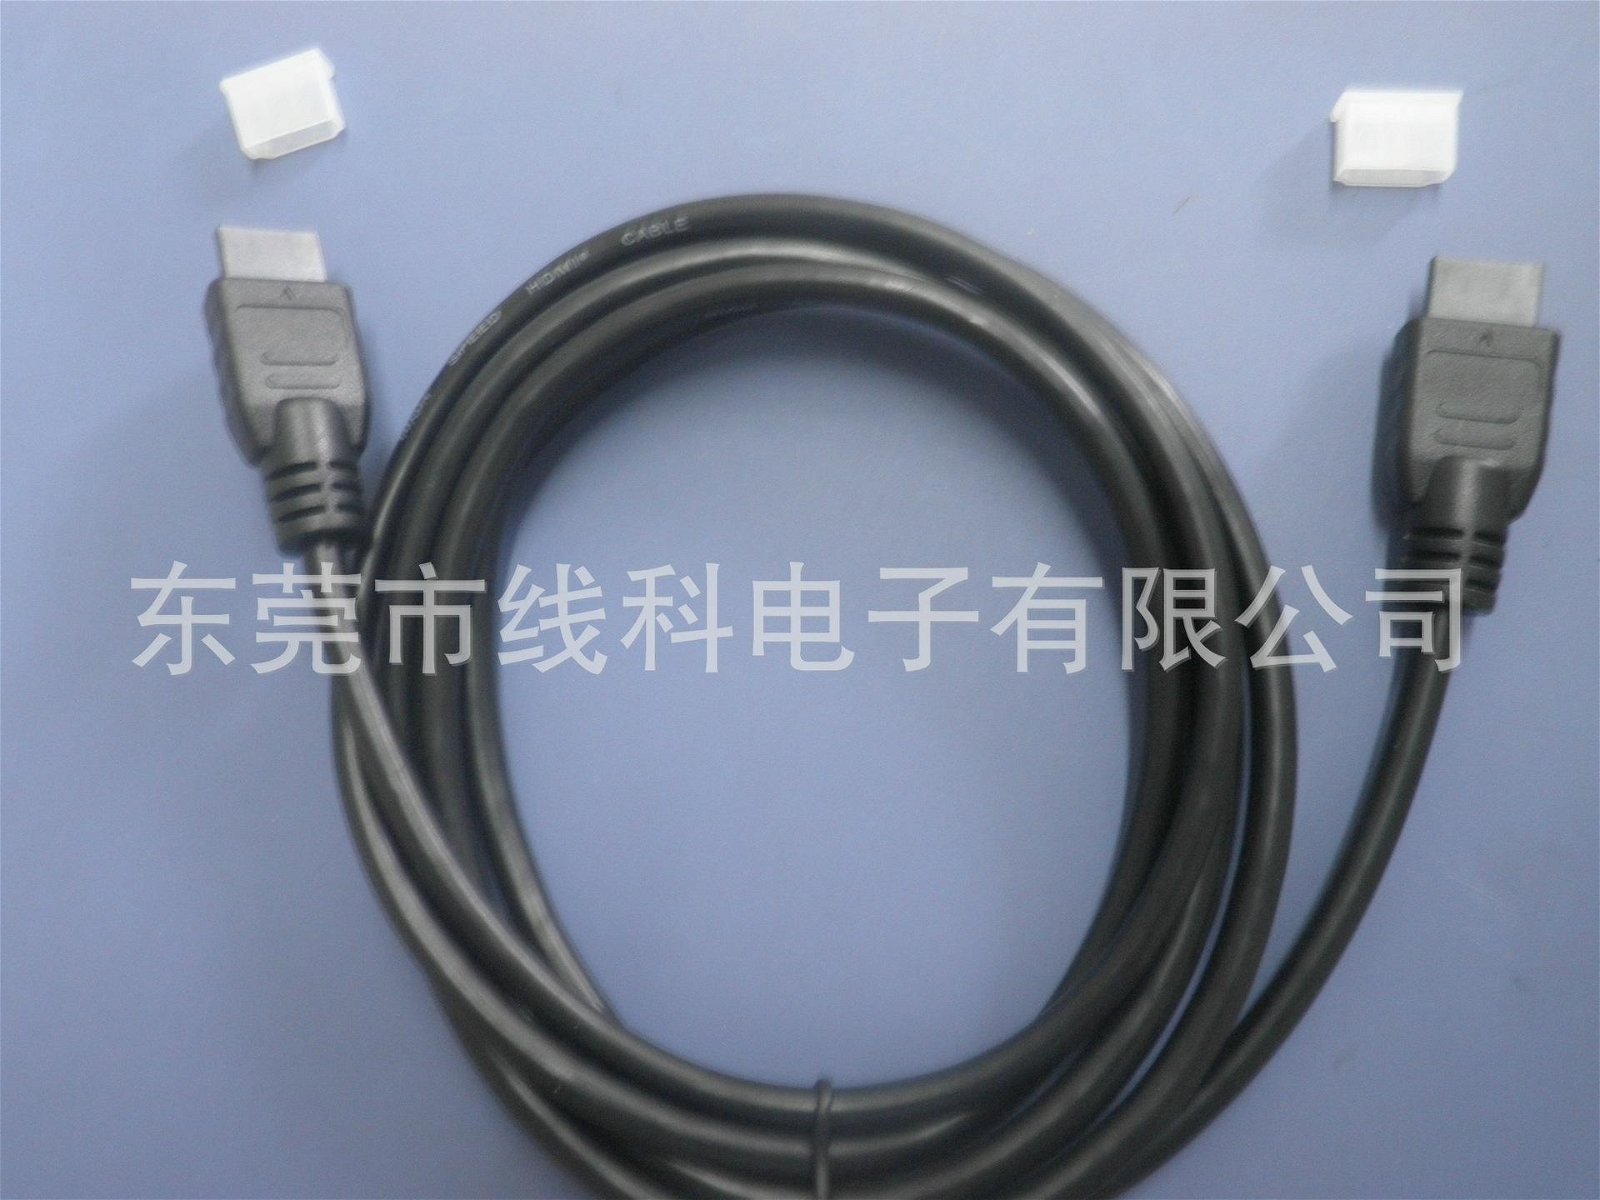 廠家直銷HDMI高清線   高清電視連接線    HDMI膠頭